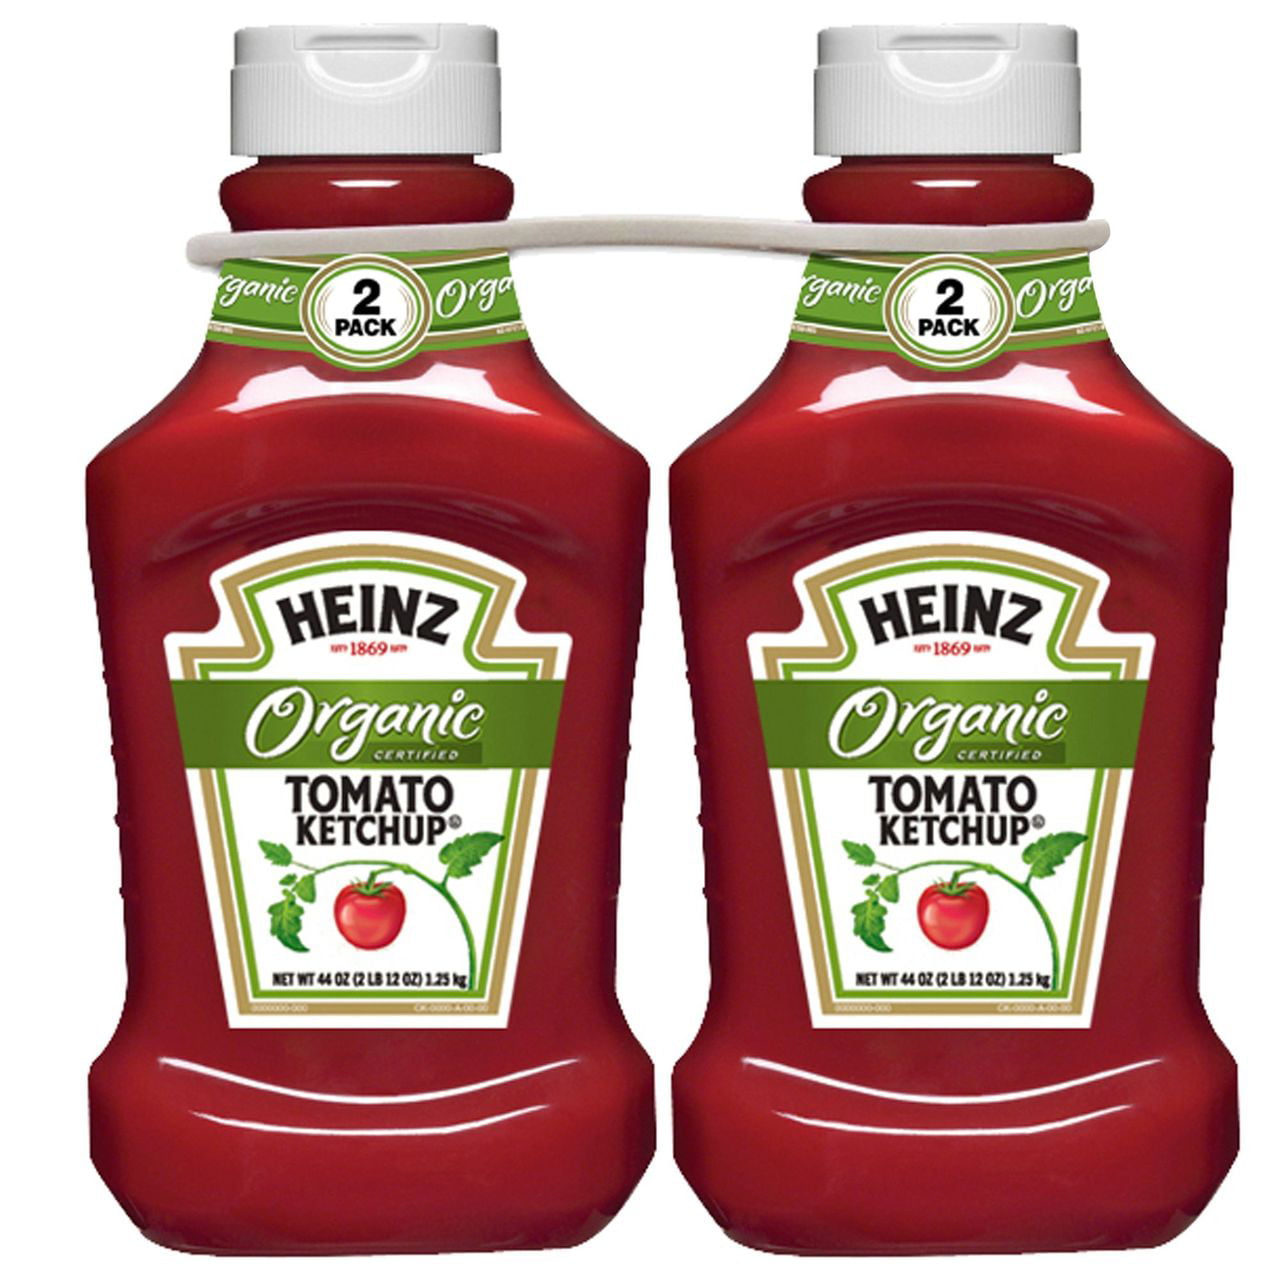 Tomato ketchup. Heinz Organic кетчуп. "Ketchup ""Heinz"" Tomato 570g  ". Heinz Tomato Ketchup Organic. Акмалько соусы.